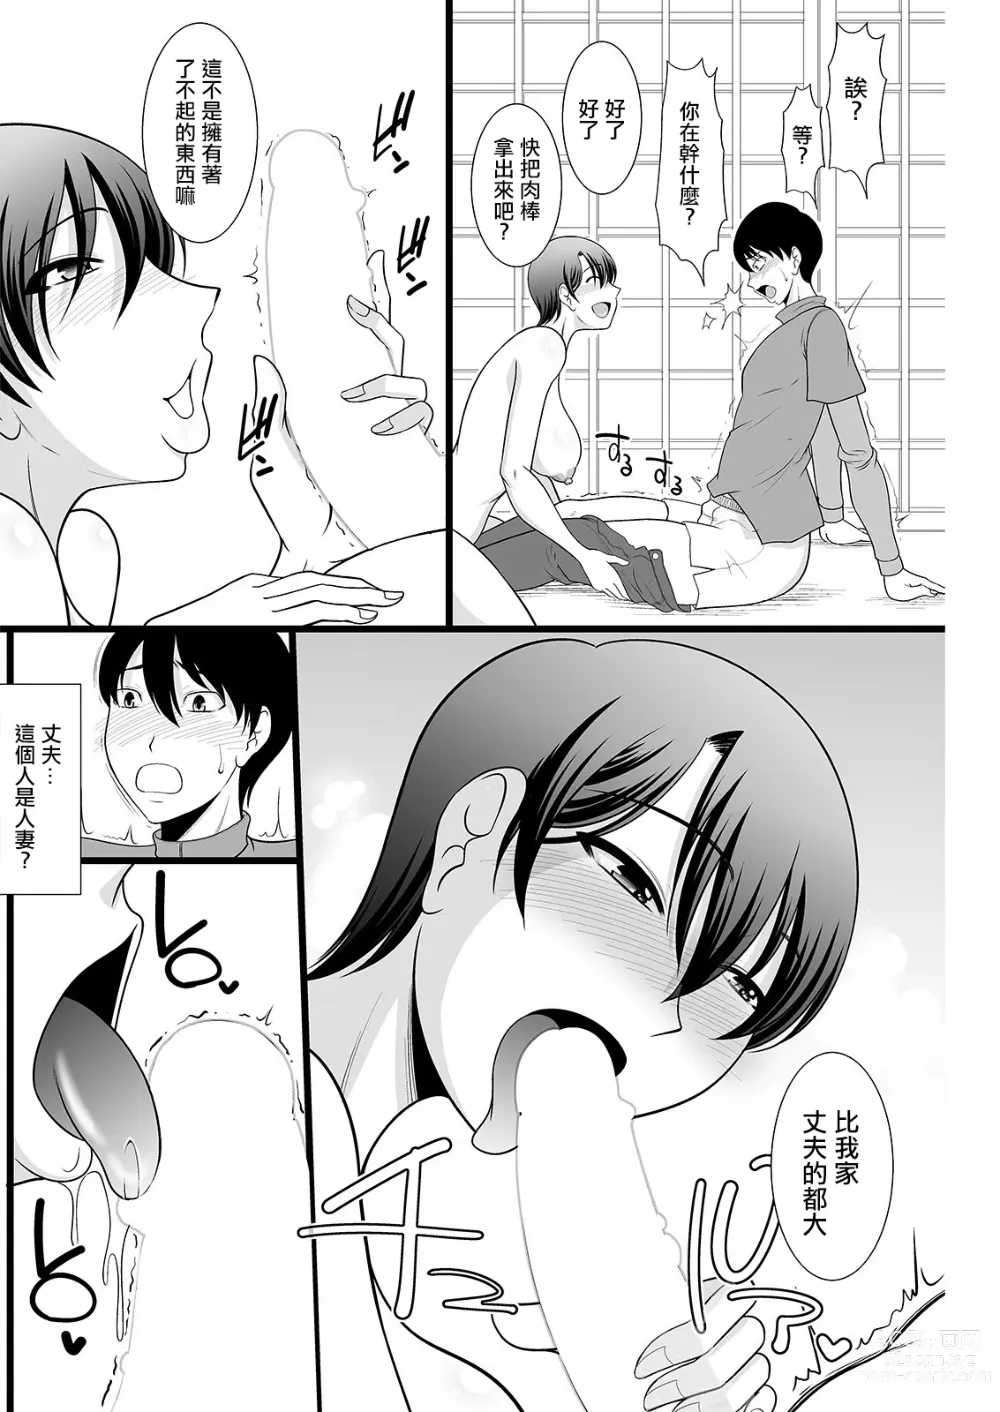 Page 6 of manga 消災除難